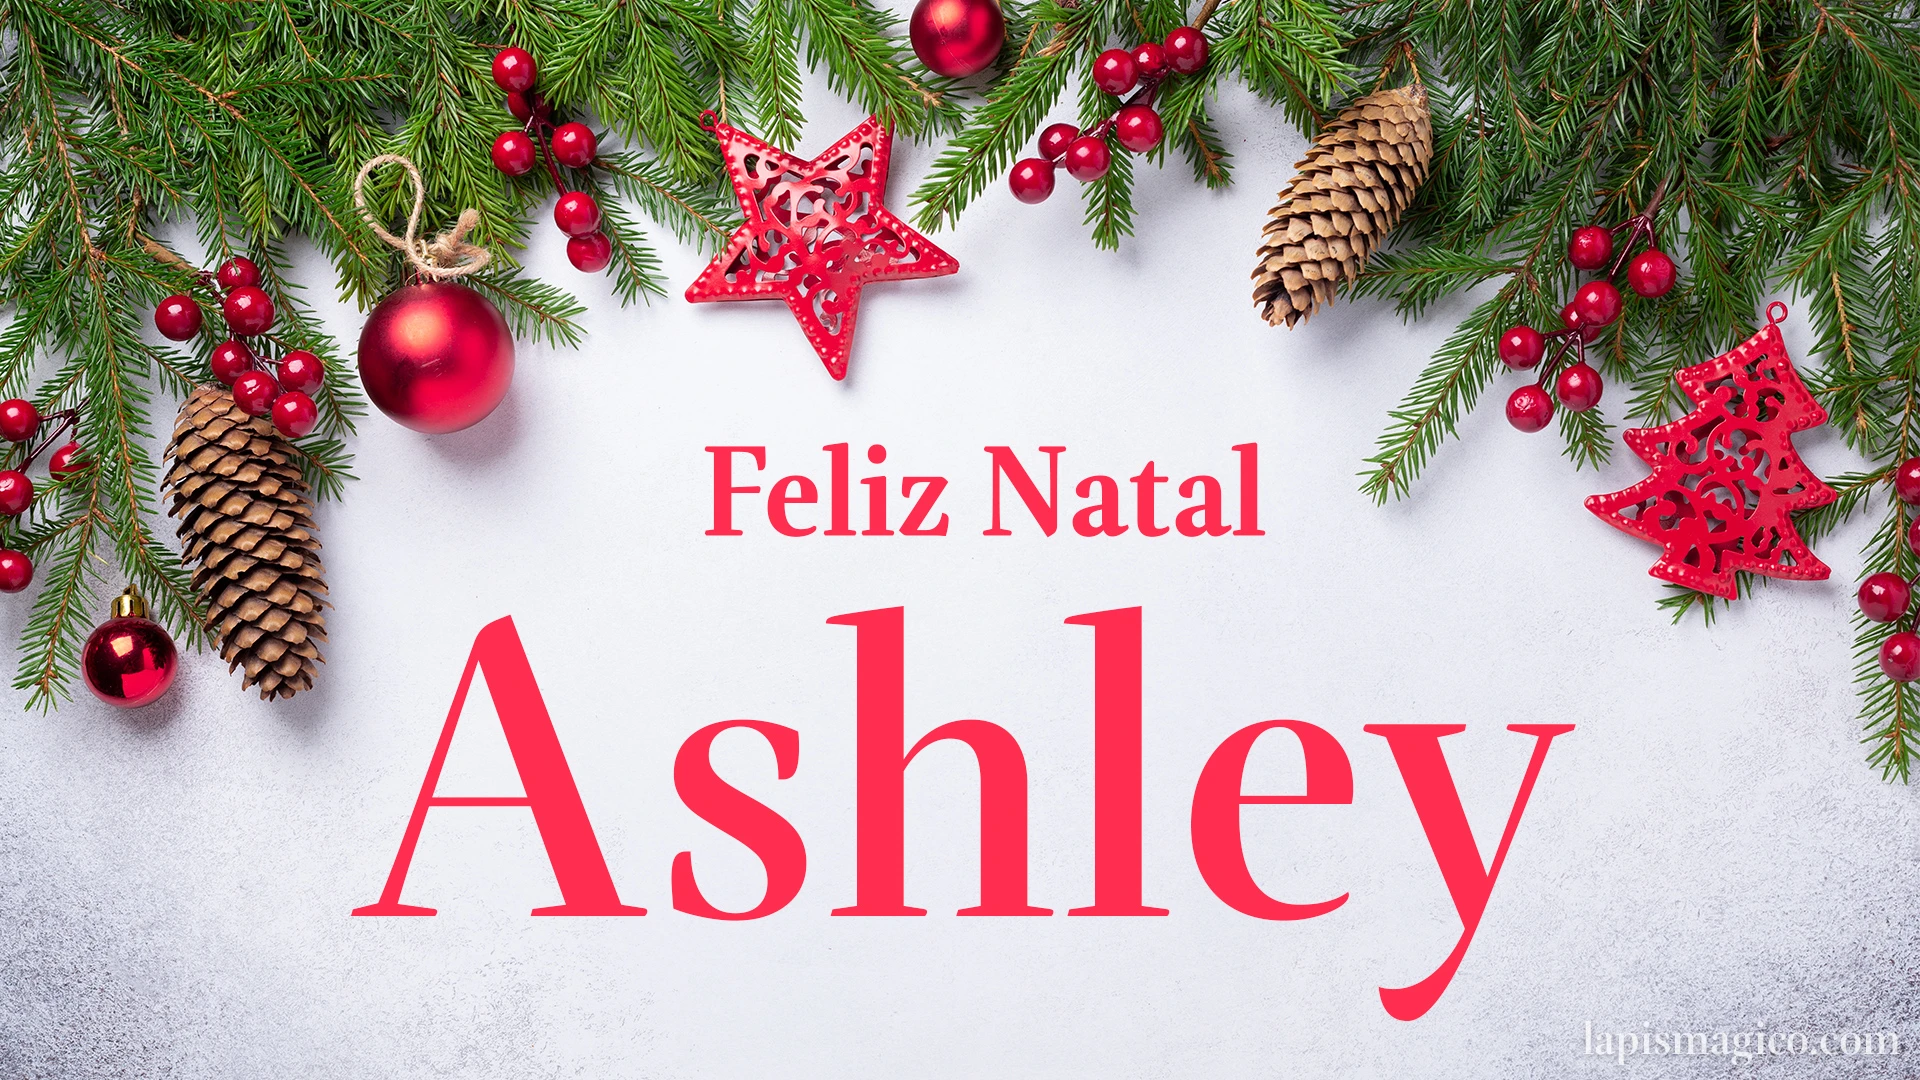 Oh Ashley, cinco postais de Feliz Natal Postal com o teu nome